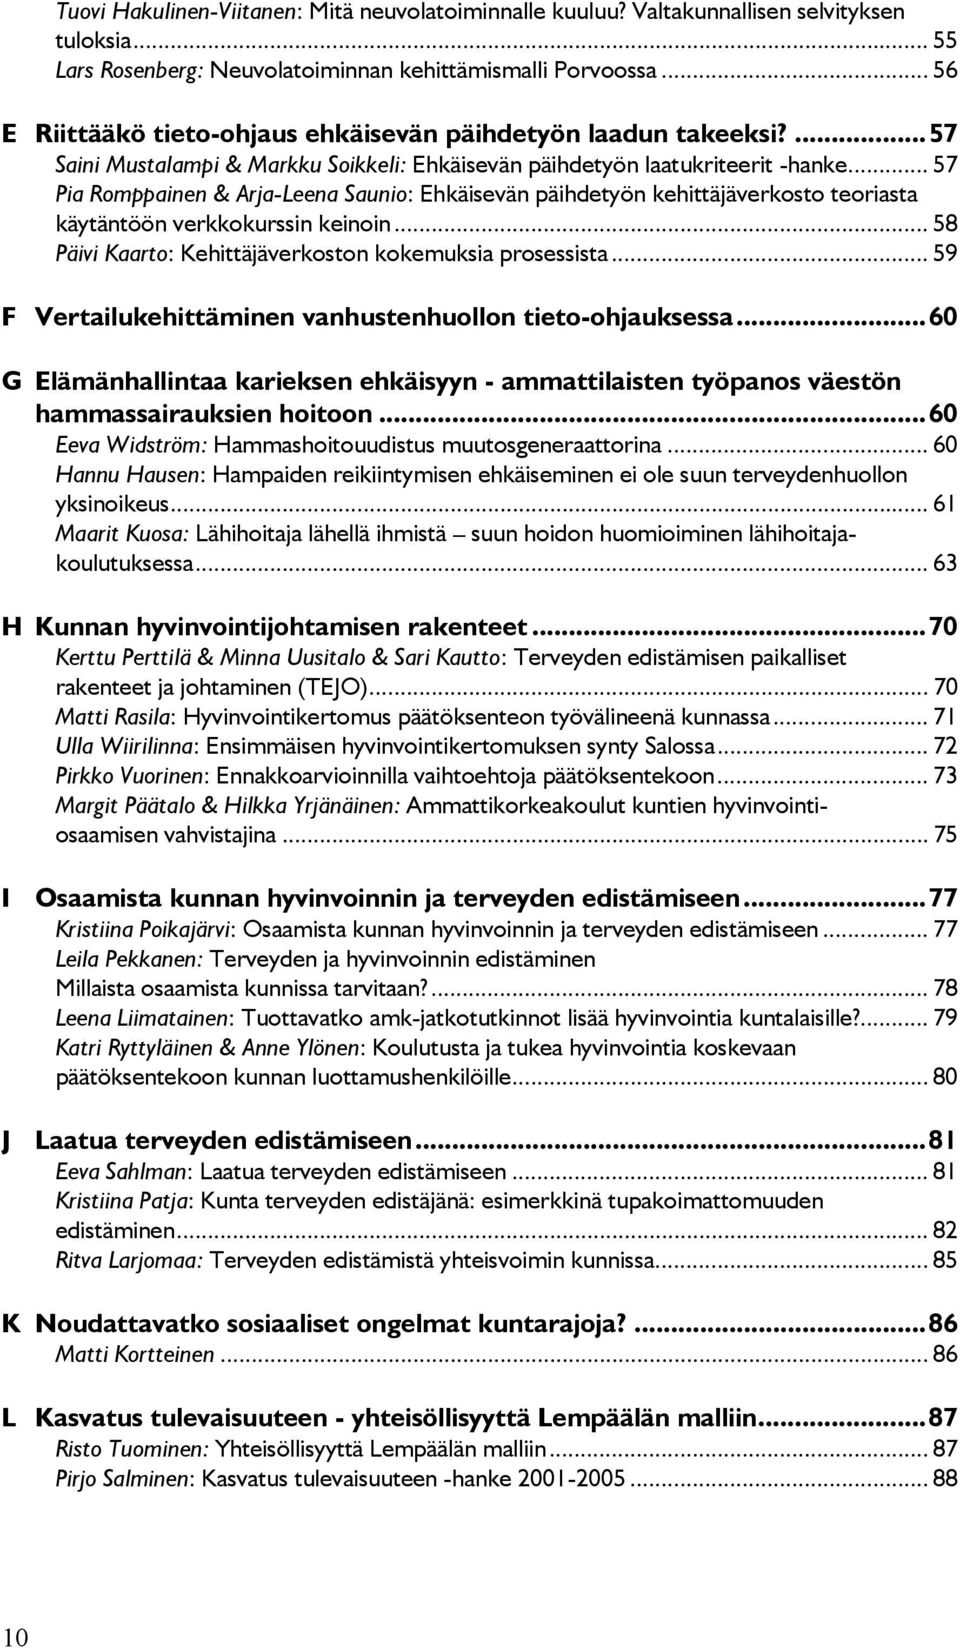 .. 57 Pia Romppainen & Arja-Leena Saunio: Ehkäisevän päihdetyön kehittäjäverkosto teoriasta käytäntöön verkkokurssin keinoin... 58 Päivi Kaarto: Kehittäjäverkoston kokemuksia prosessista.